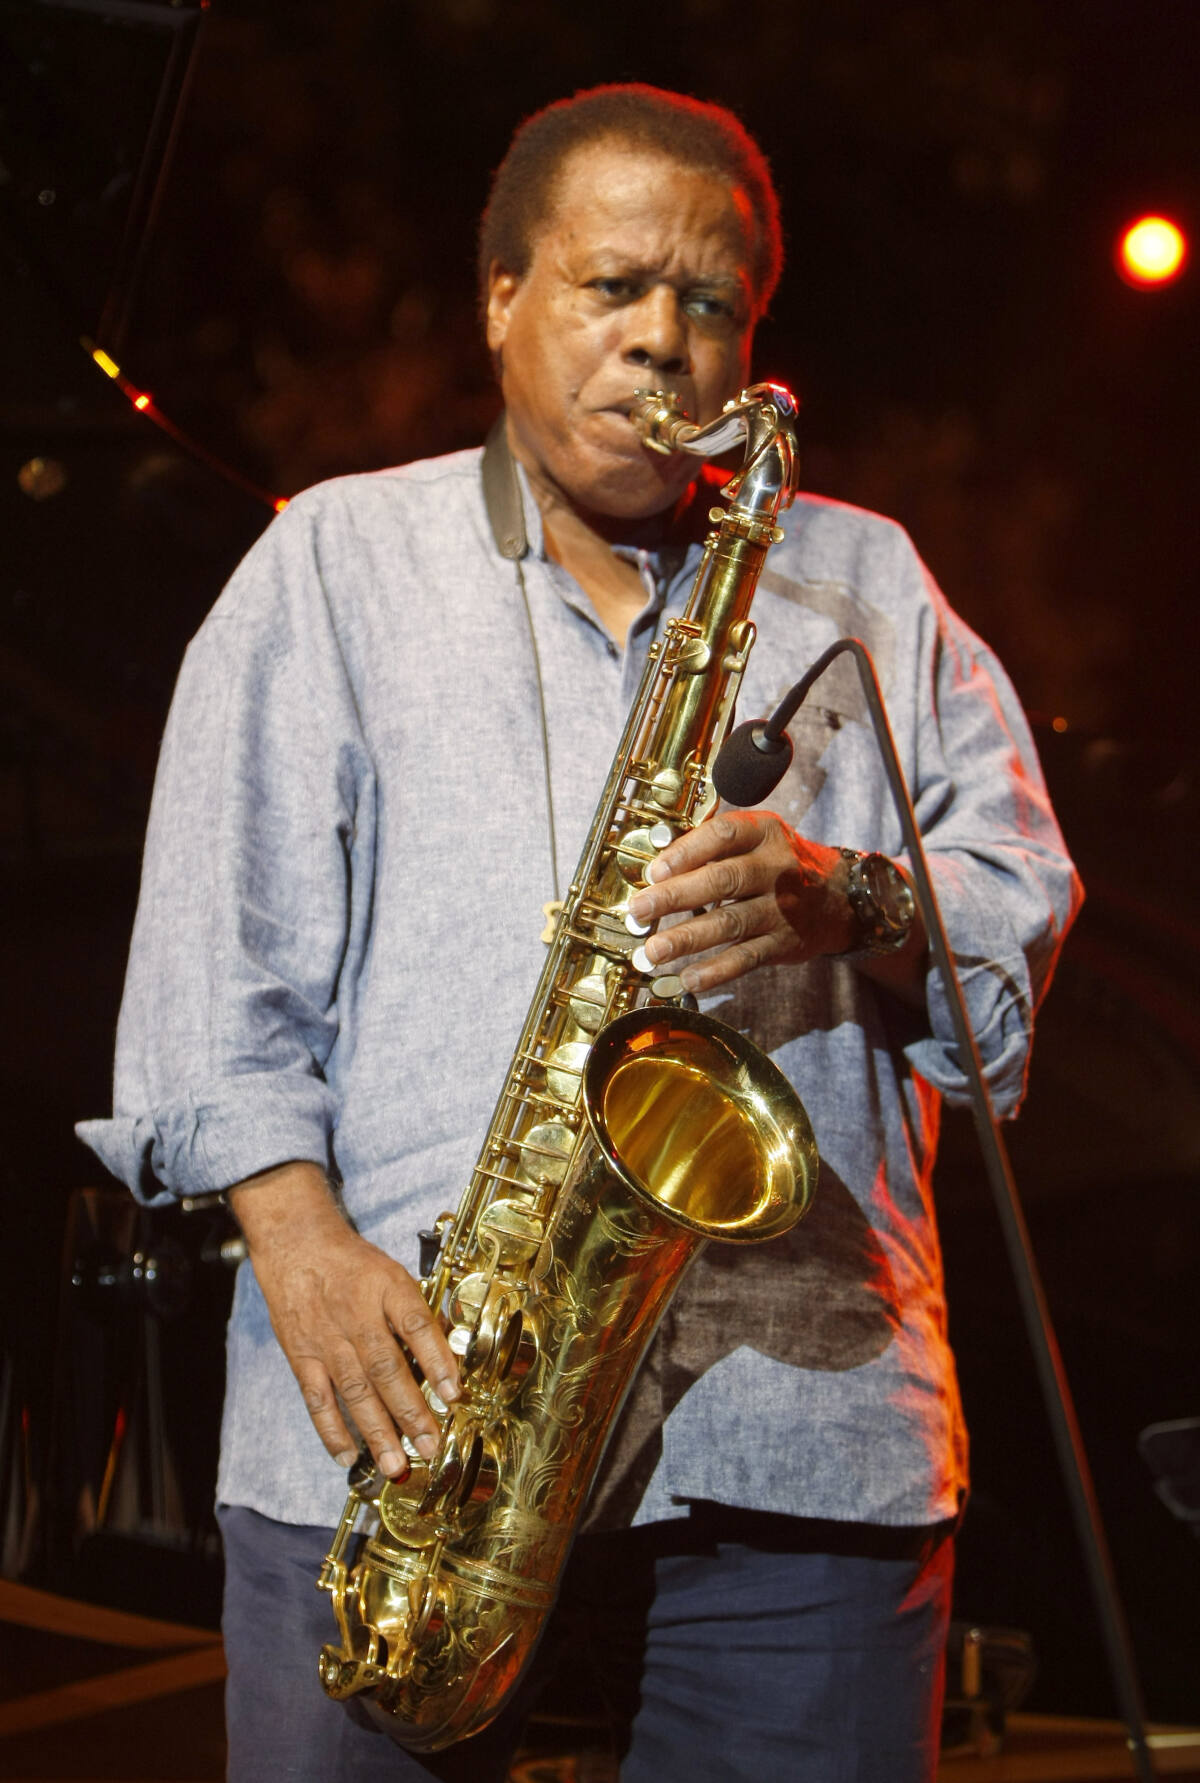 Wayne Shorter jazz saxophone pioneer dies at 89